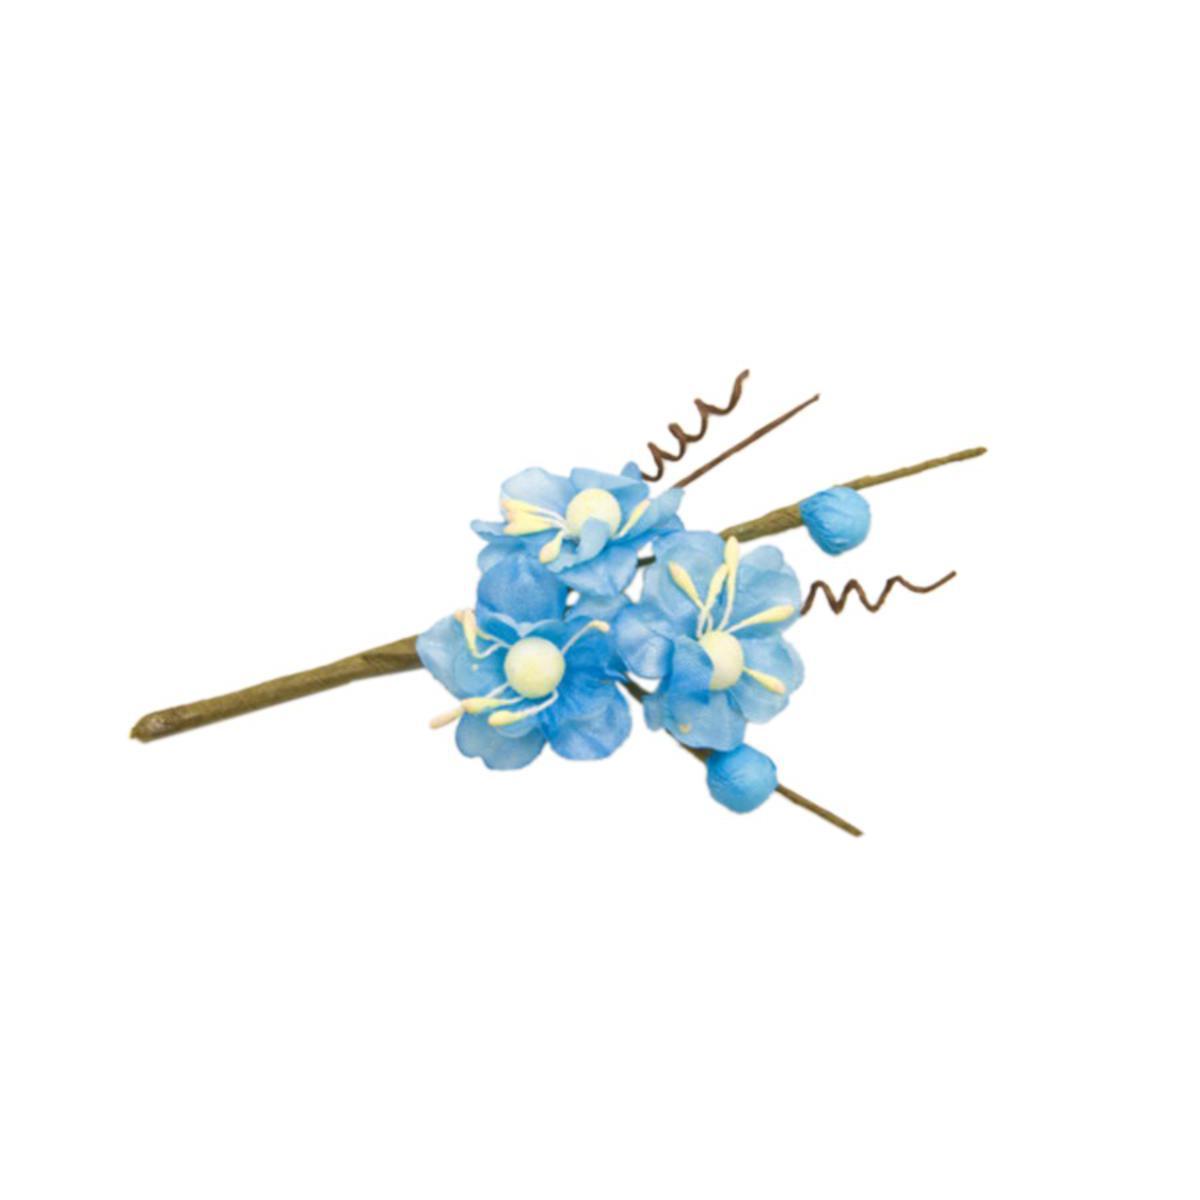 6 tiges avec fleurs de pêcher - 10 cm - Polyester - Bleu turquoise